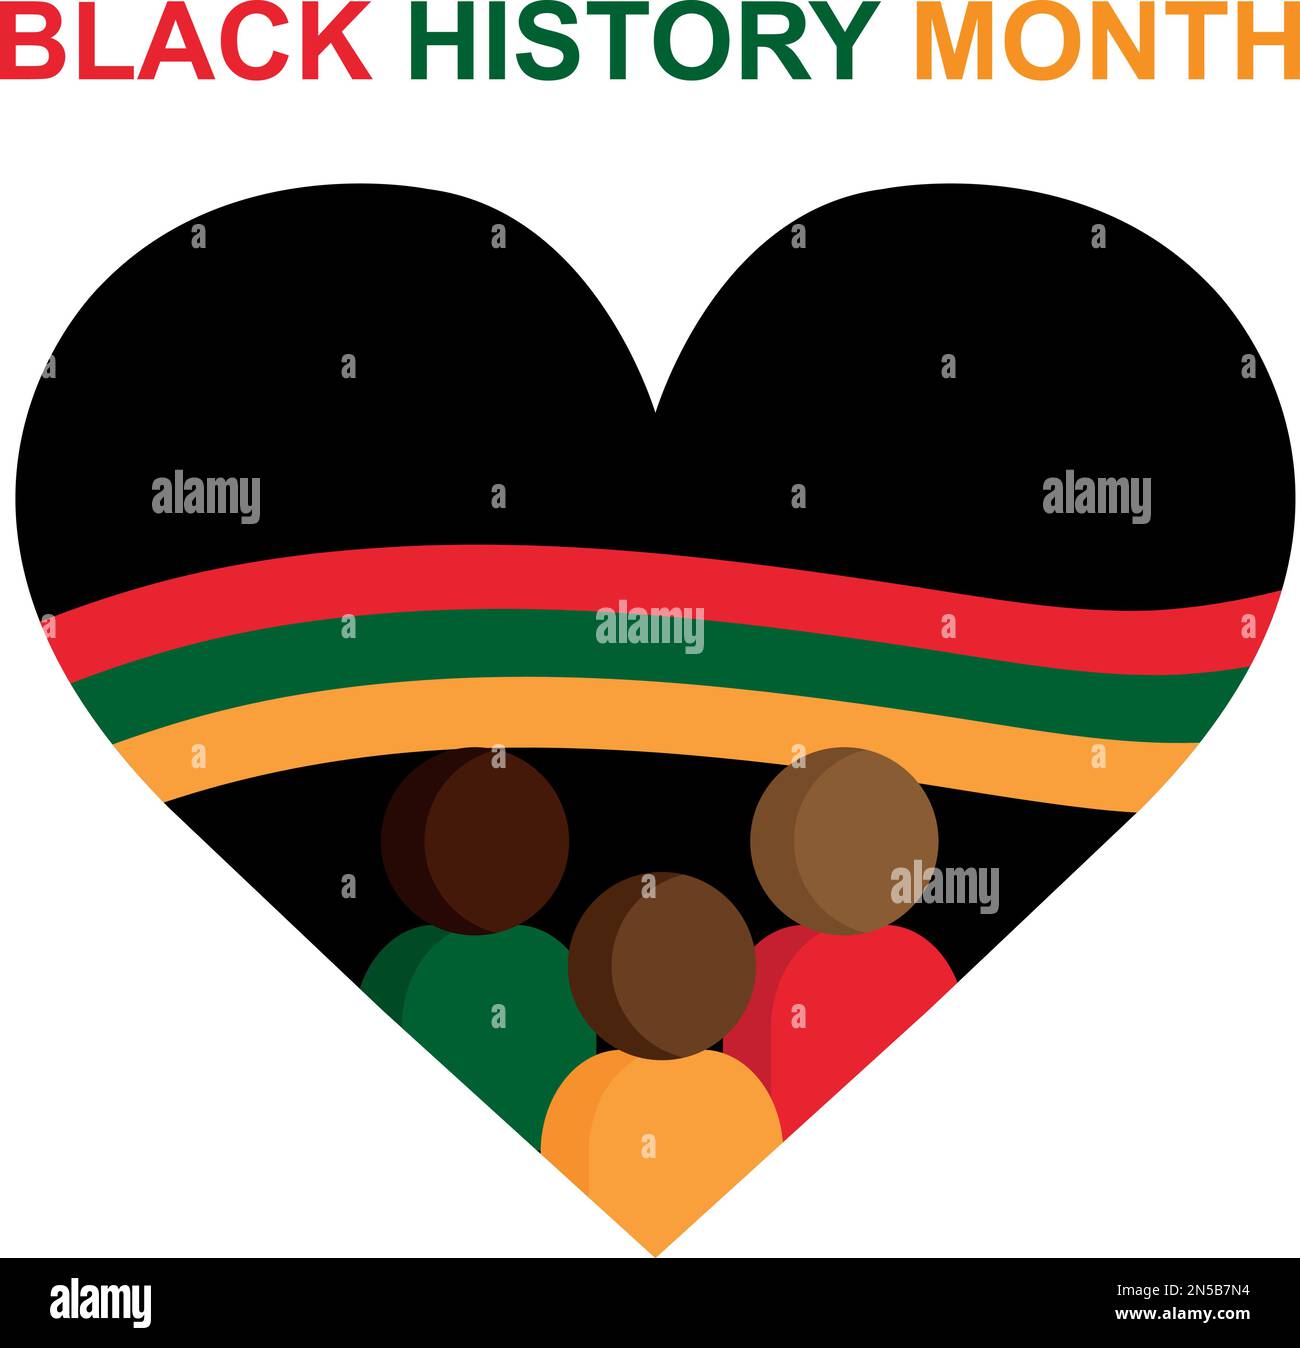 Schwarzer Geschichtsmonat. Afroamerikanische Geschichte. Schwarzes Herz mit einer grünen, gelben und roten Flagge. Personensymbole. Wird jährlich gefeiert. Stock Vektor